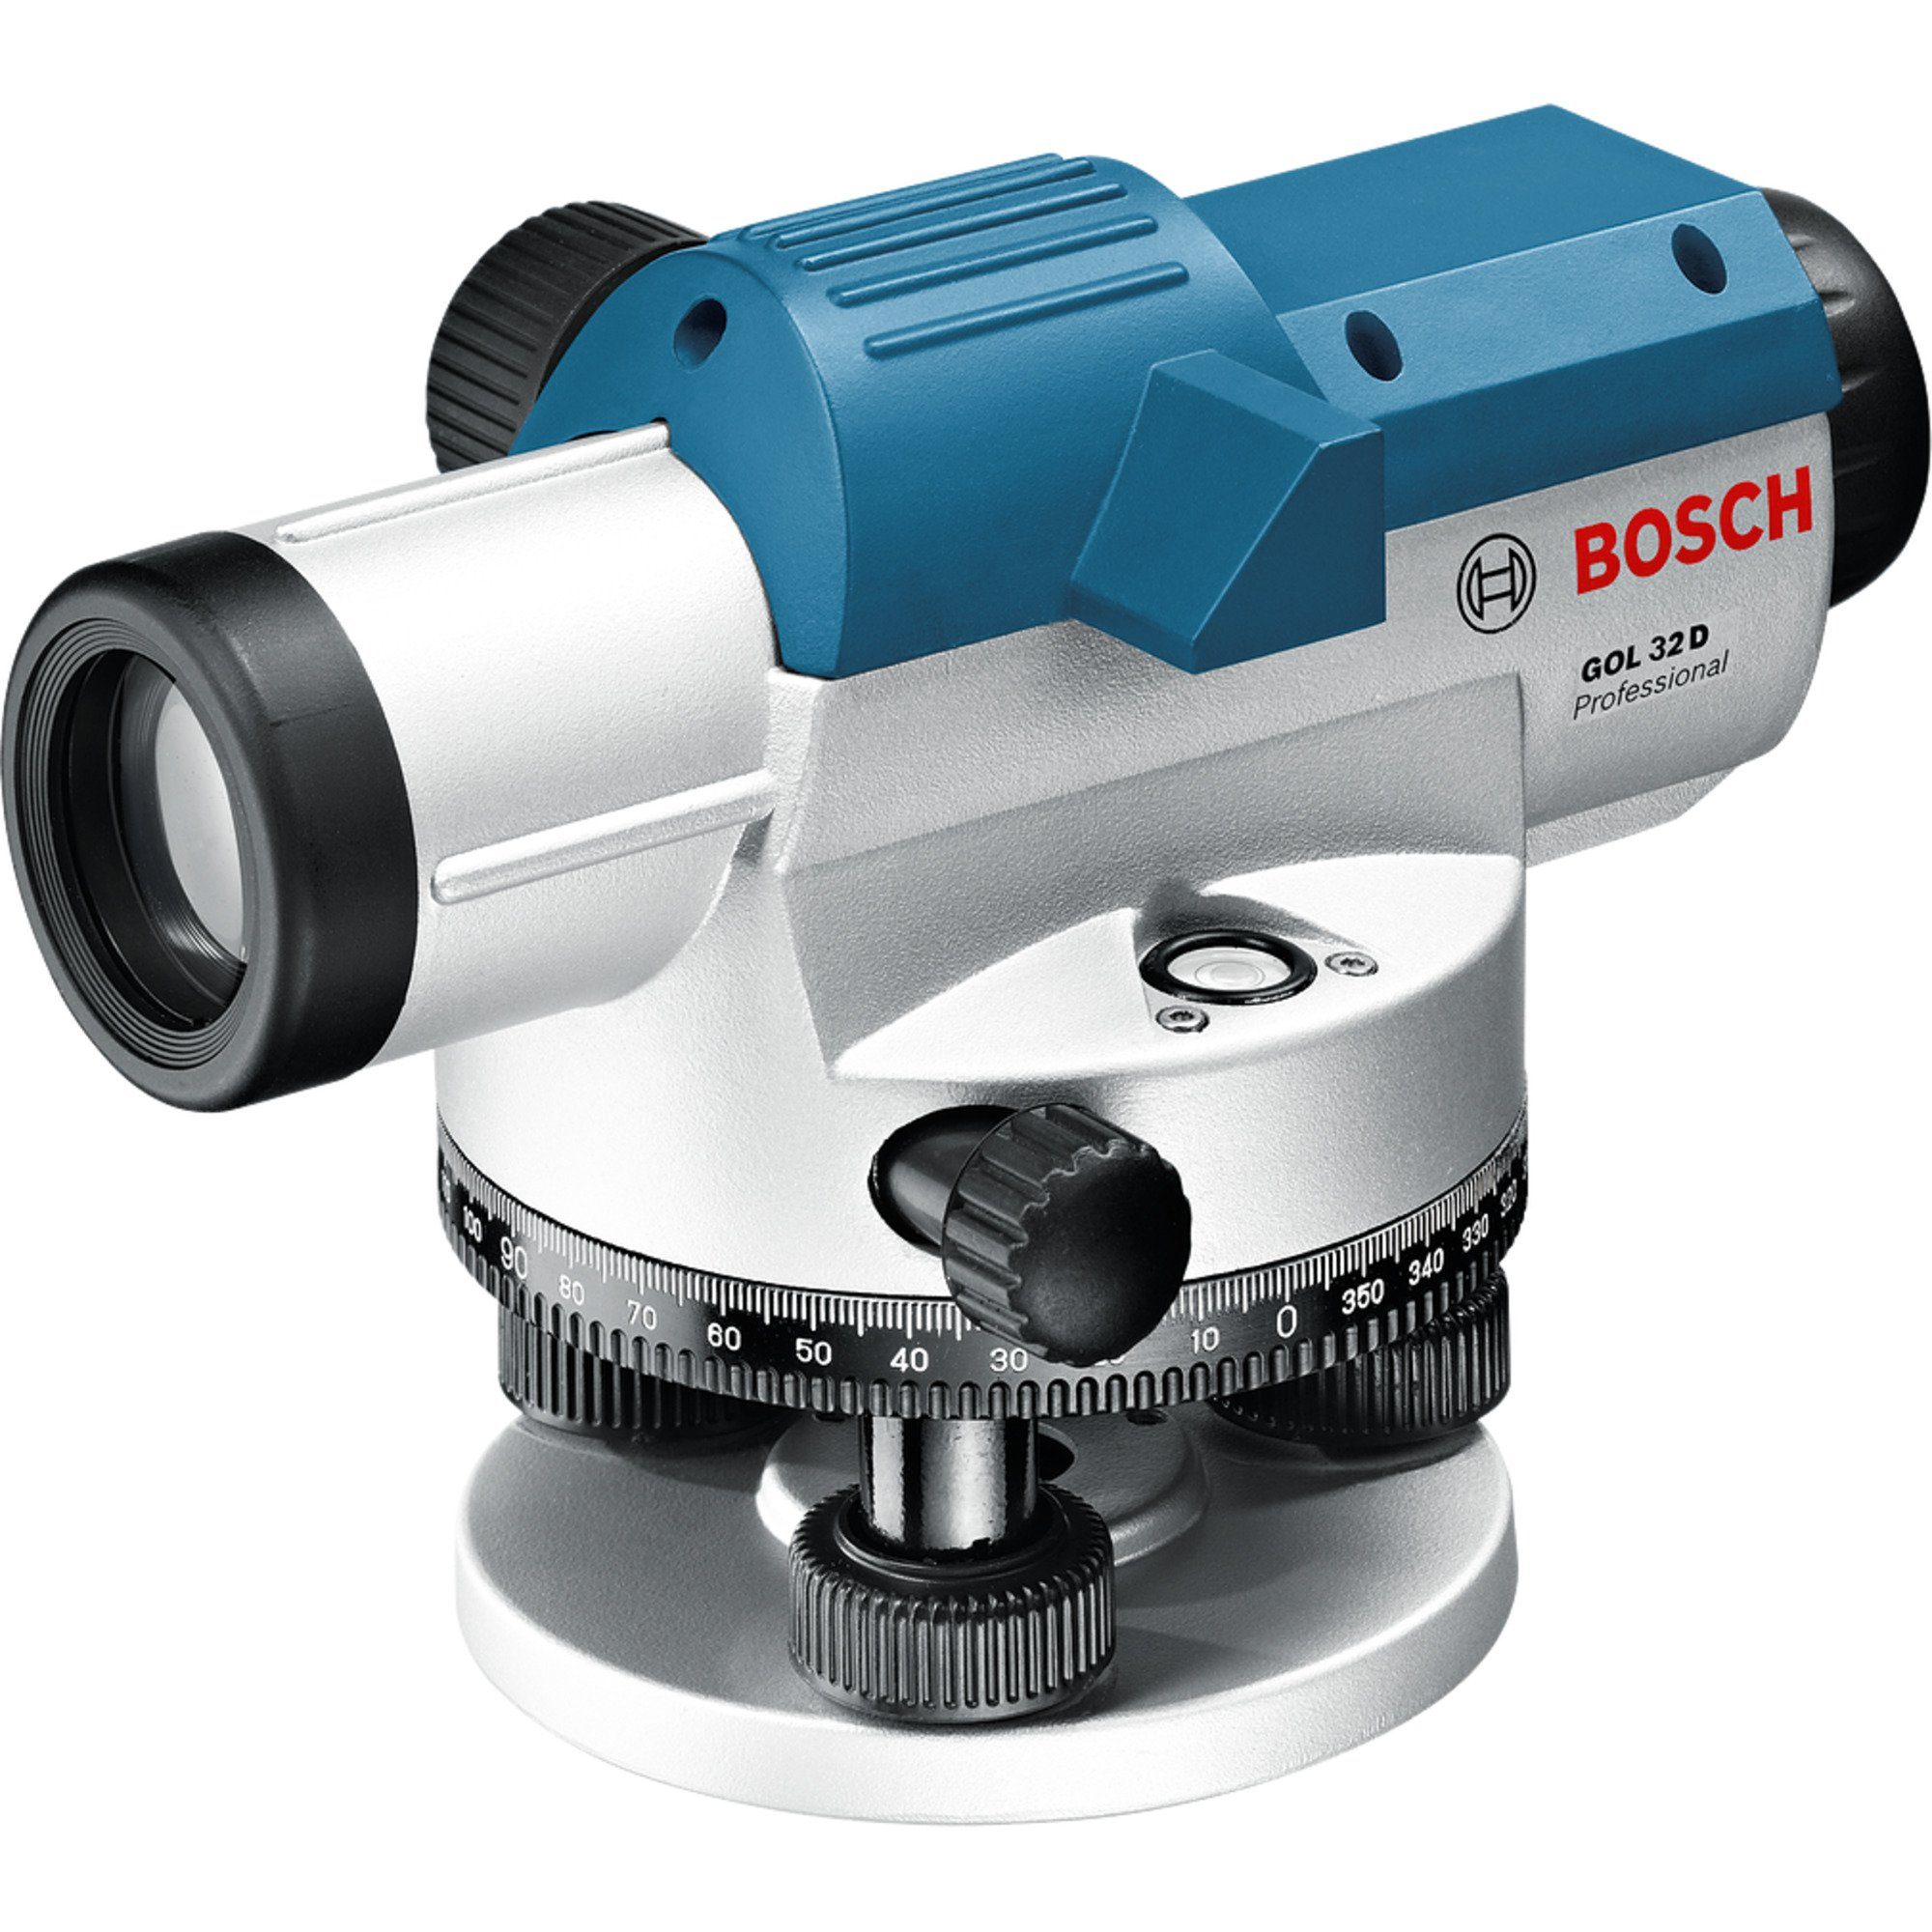 BOSCH Akku-Multifunktionswerkzeug Bosch Professional Optisches Nivelliergerät GOL 32